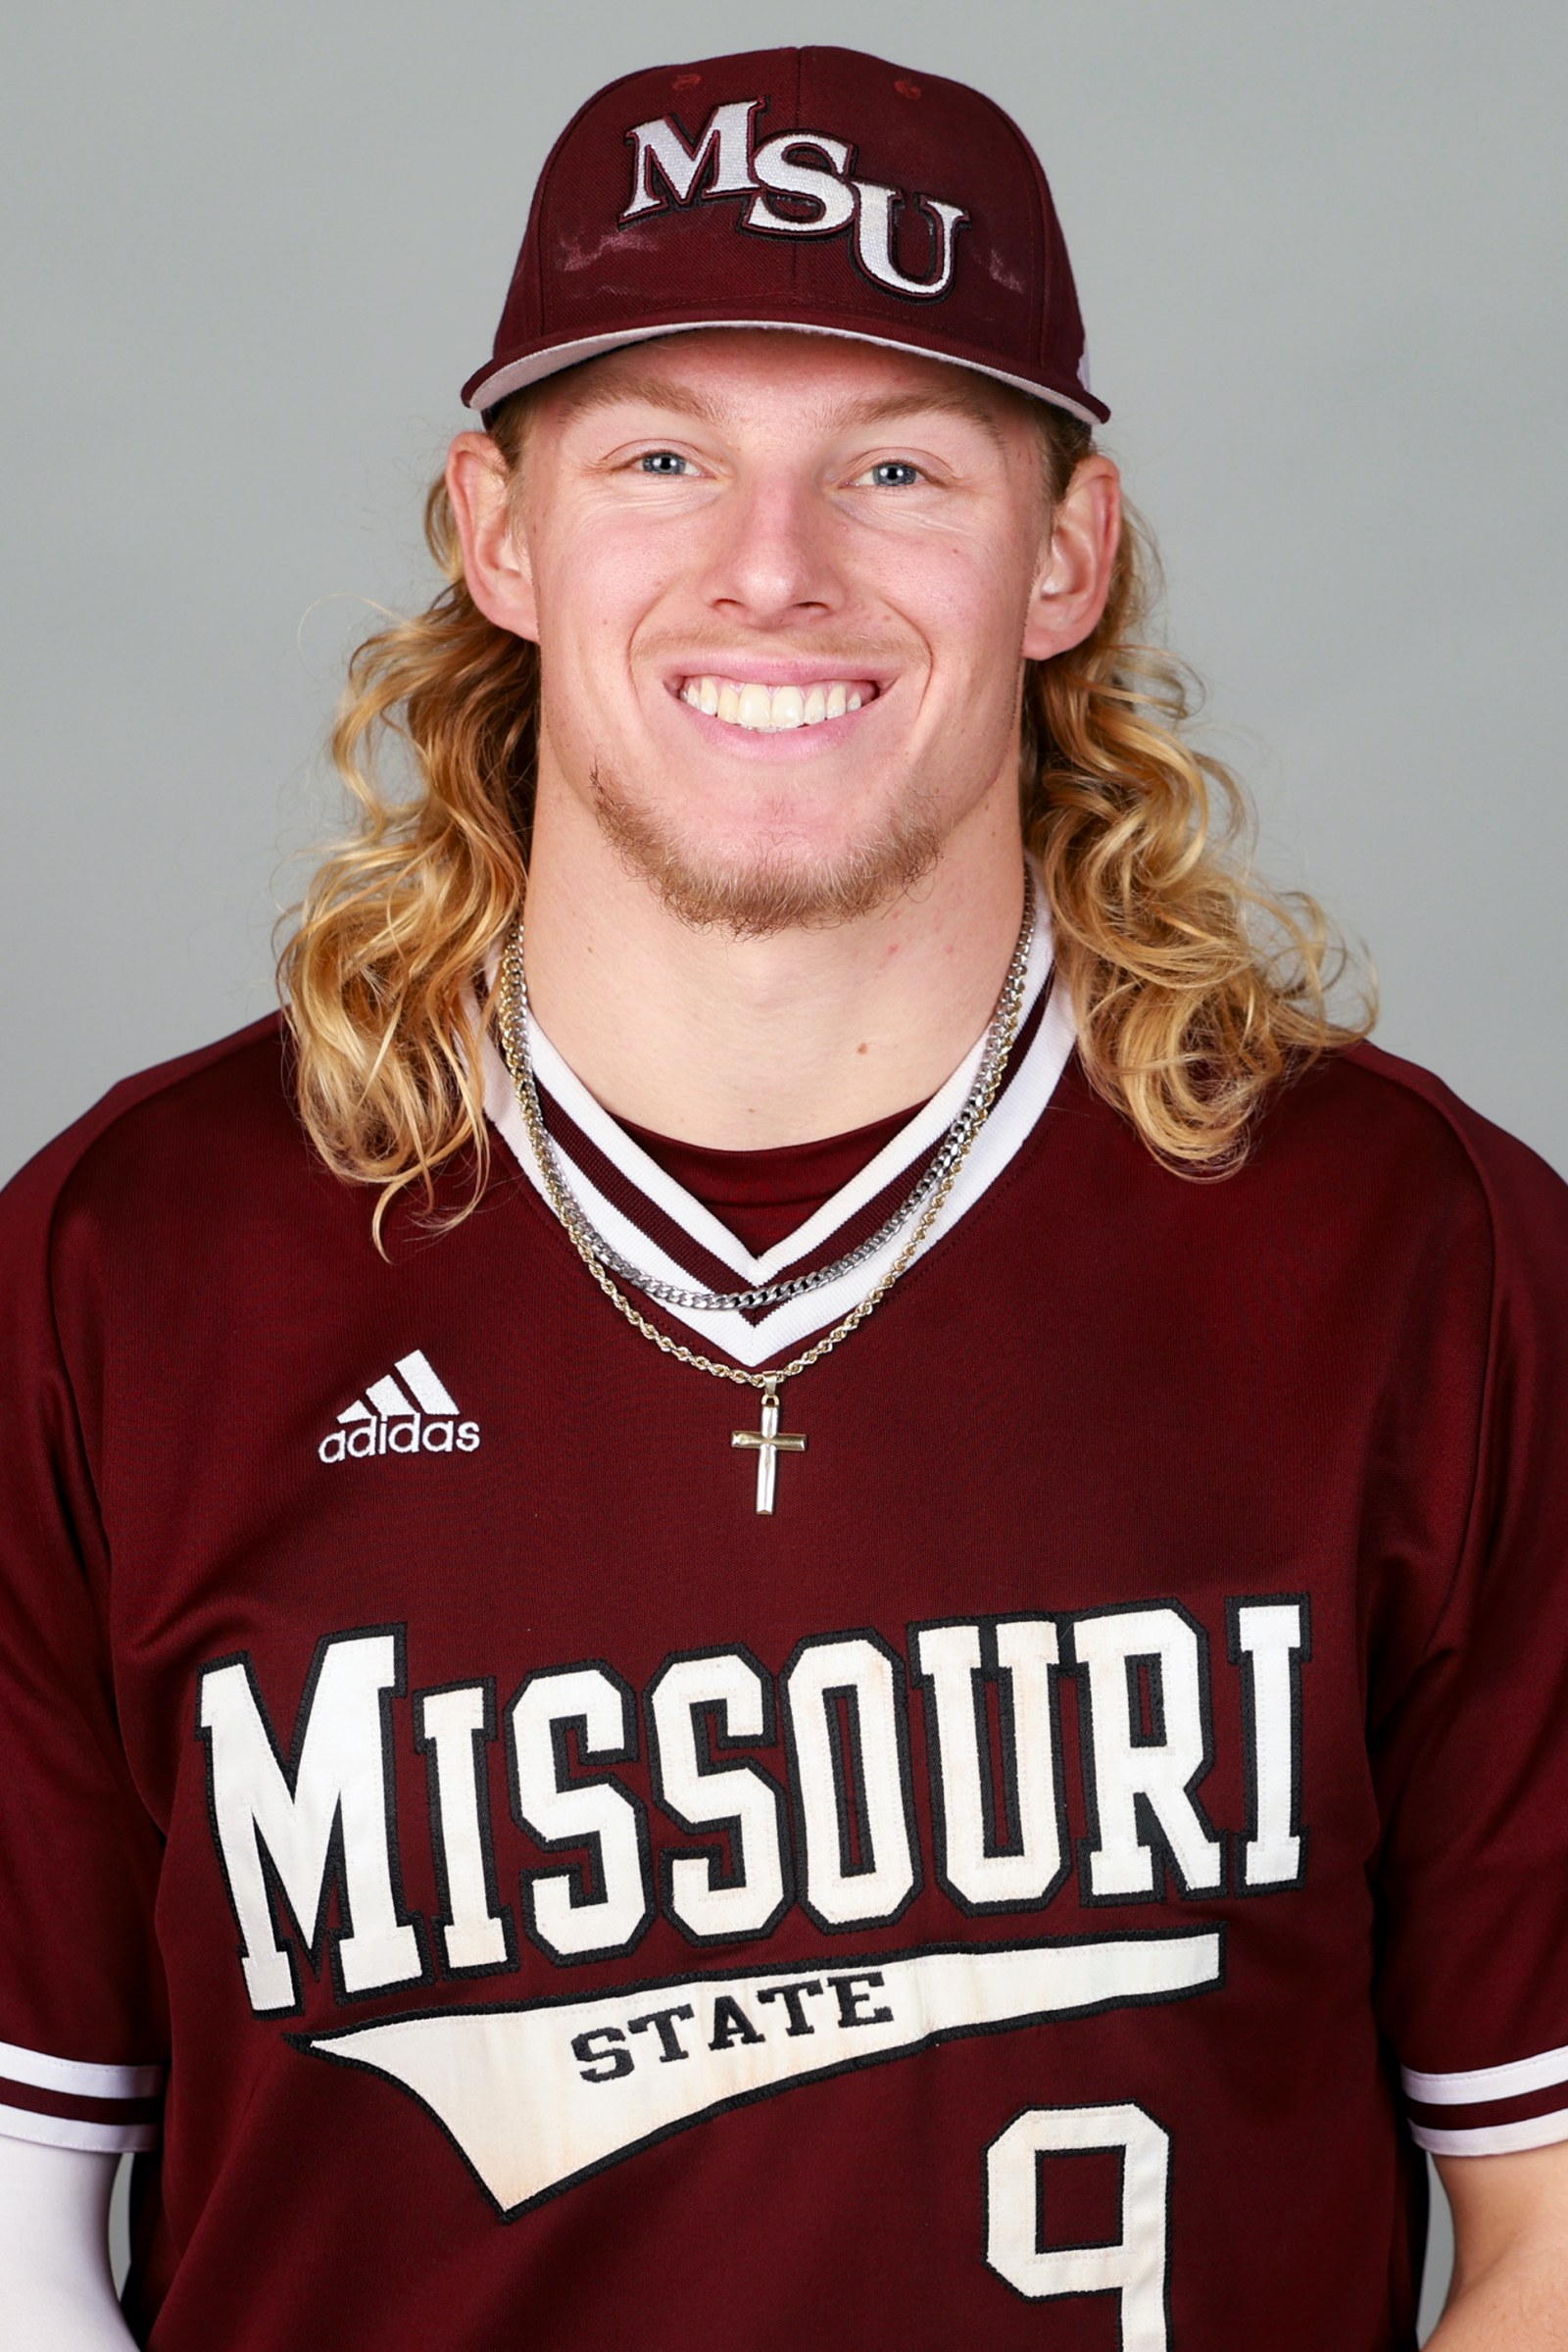 Missouri State baseball player Zack Stewart